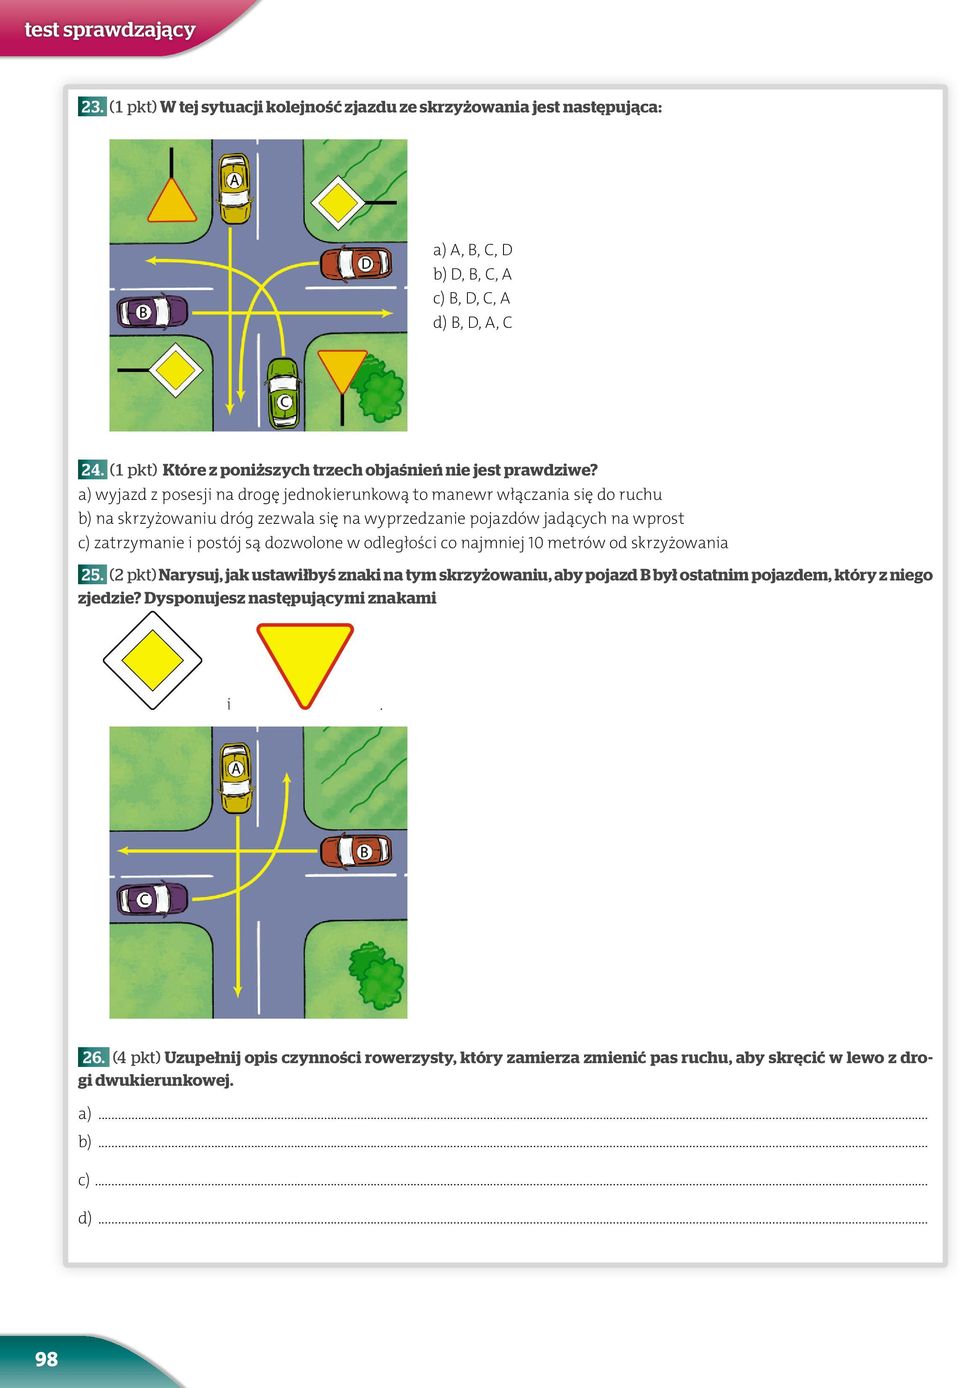 a) wyjazd z posesji na drogę jednokierunkową to manewr włączania się do ruchu b) na skrzyżowaniu dróg zezwala się na wyprzedzanie pojazdów jadących na wprost c) zatrzymanie i postój są